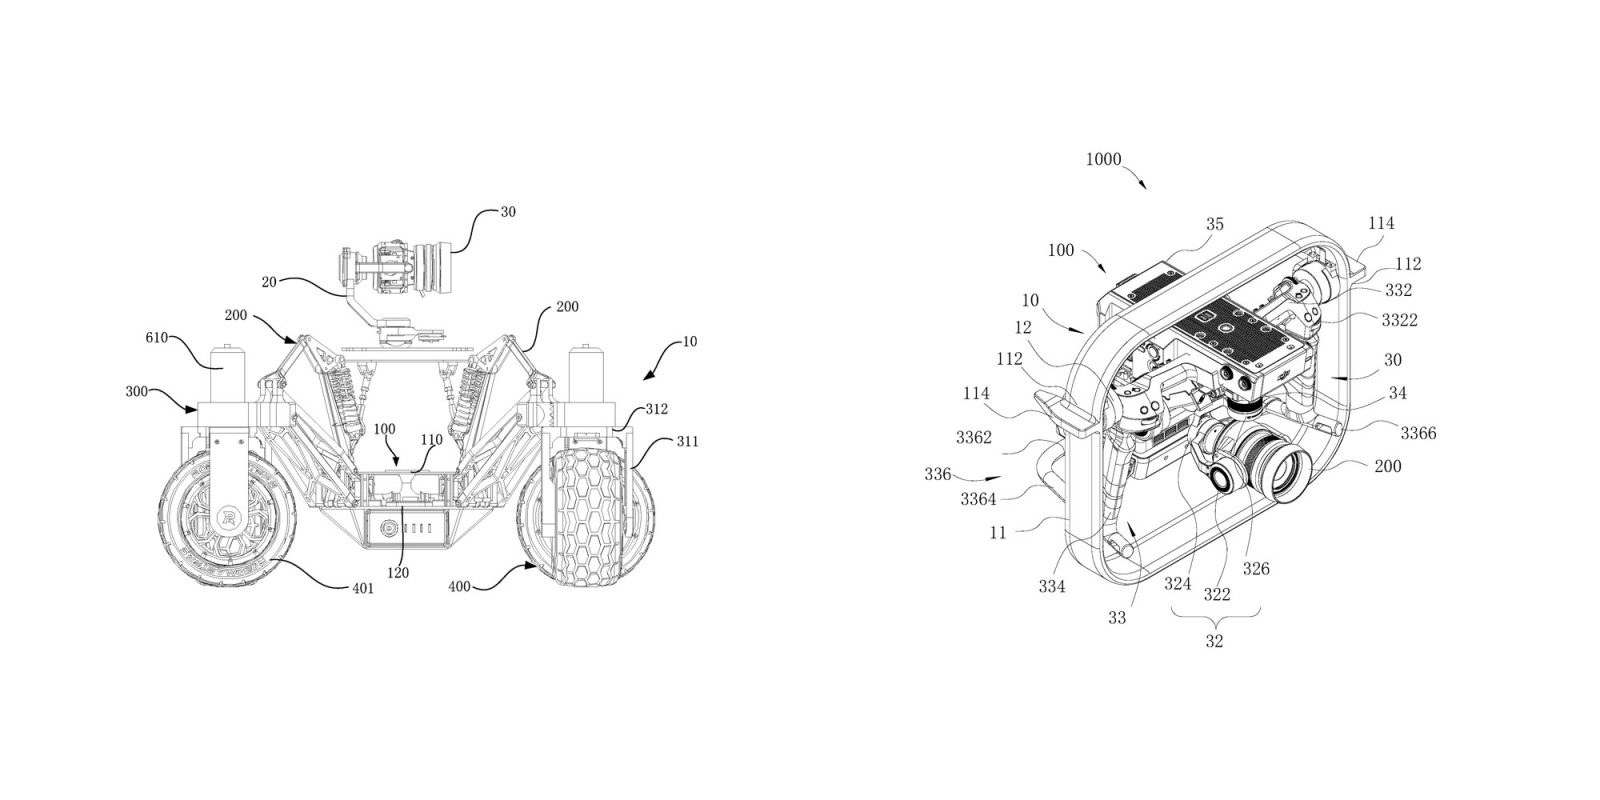 dji camera car new gimbal patent